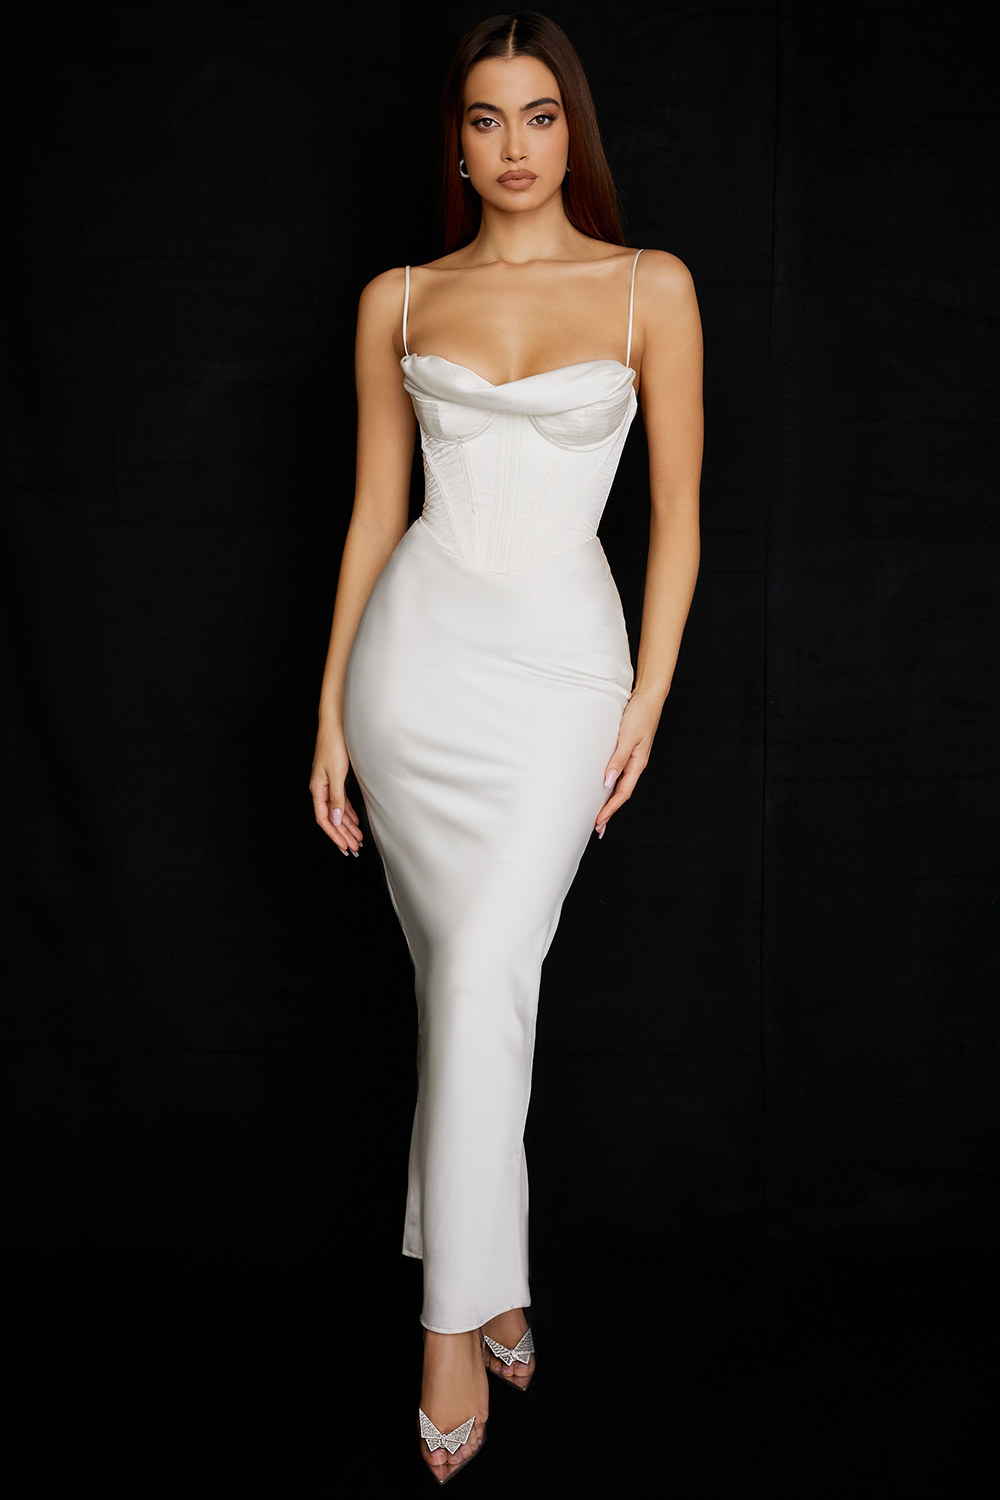 model wearing the dress